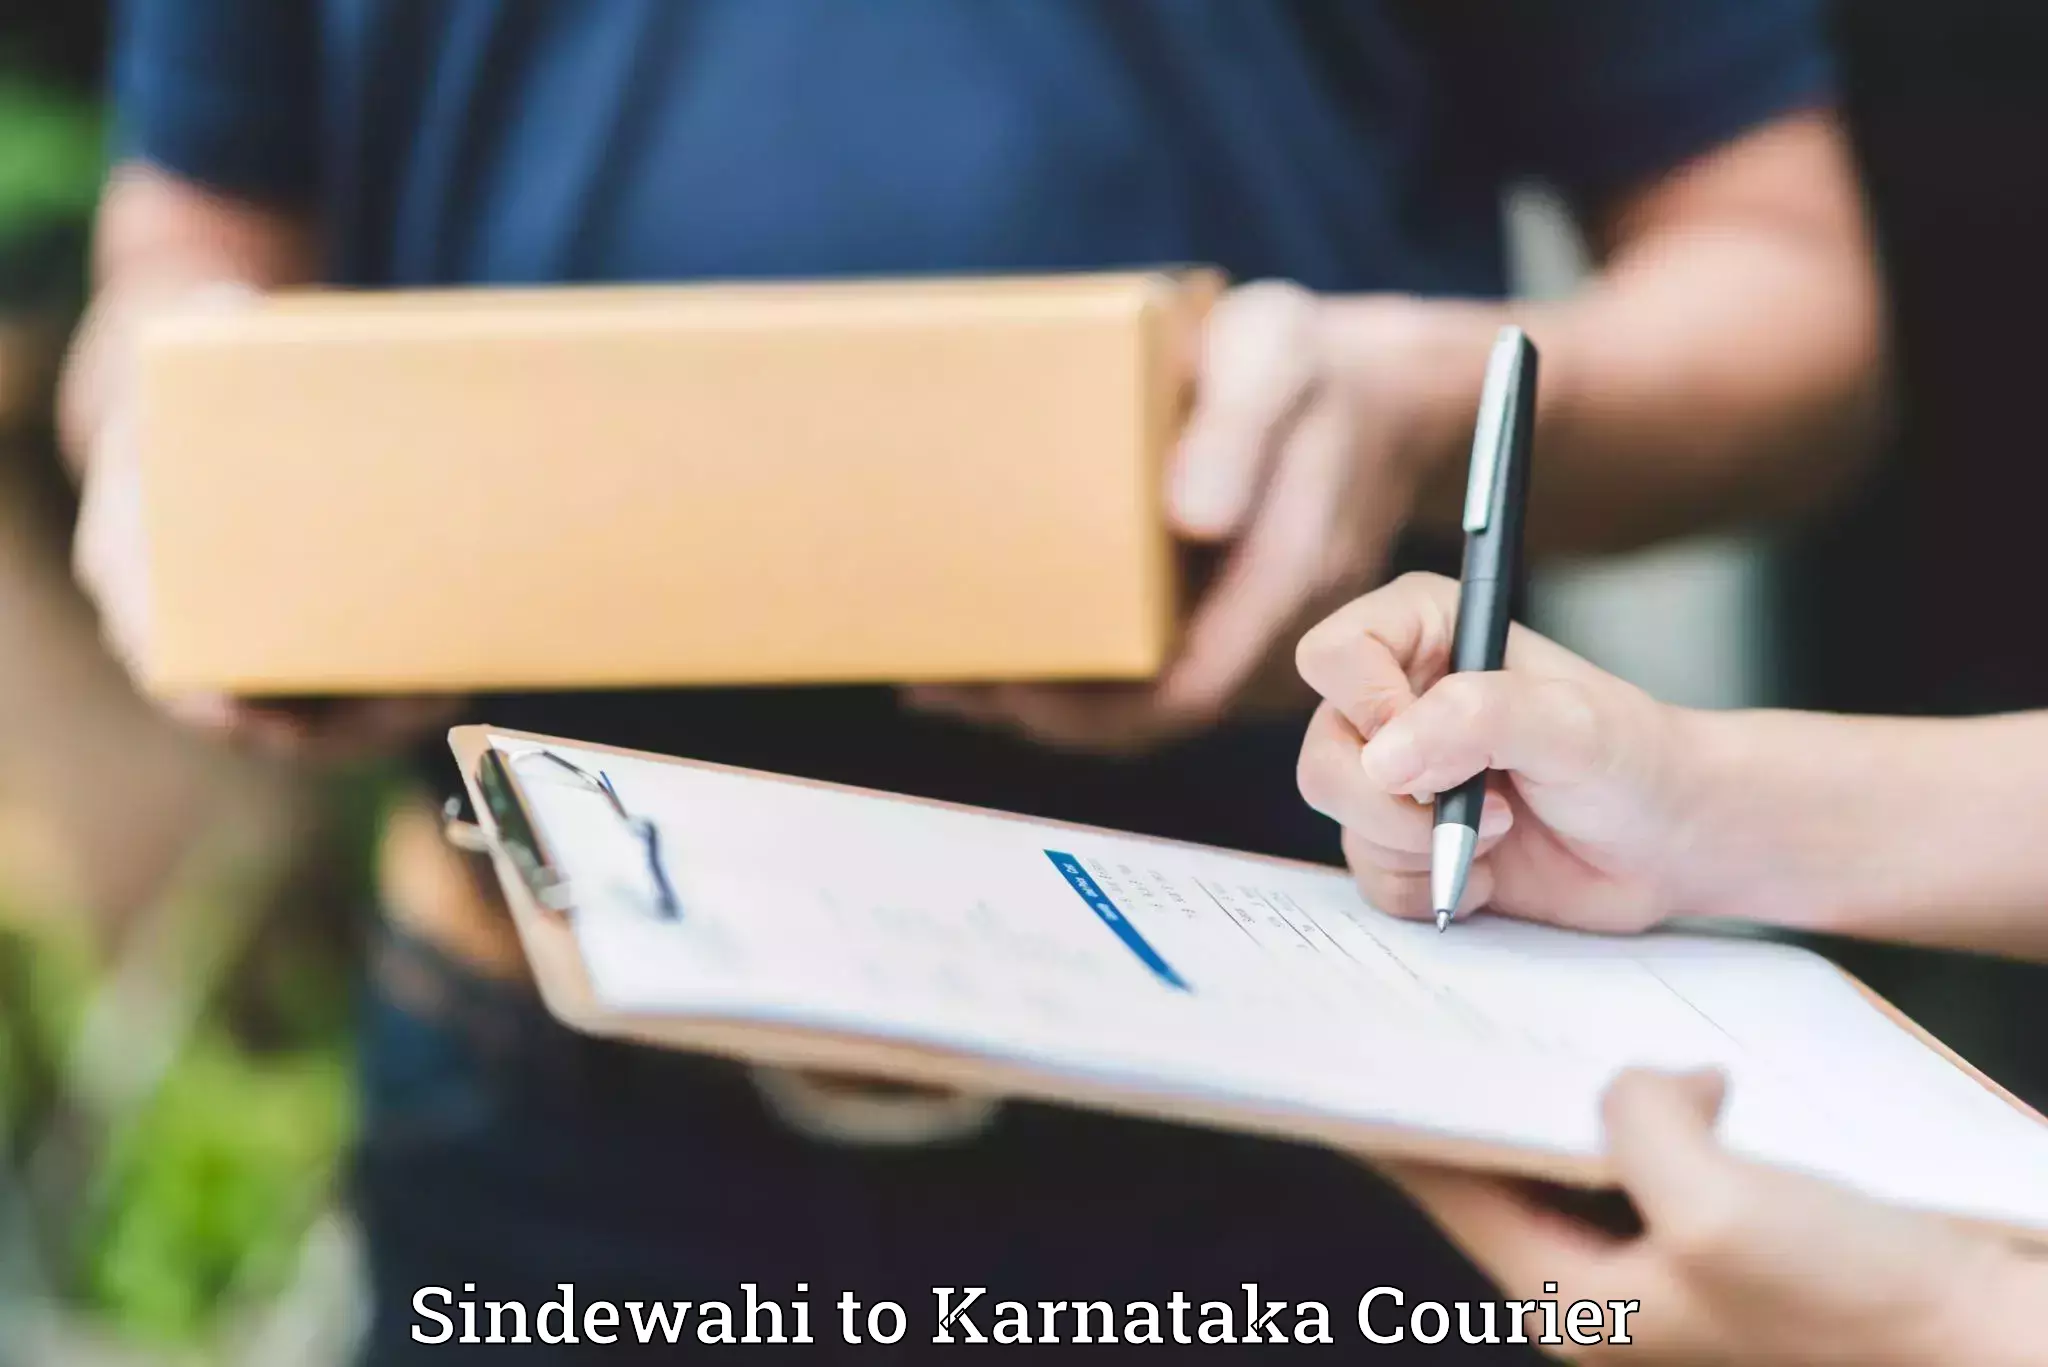 Baggage transport management Sindewahi to Karnataka